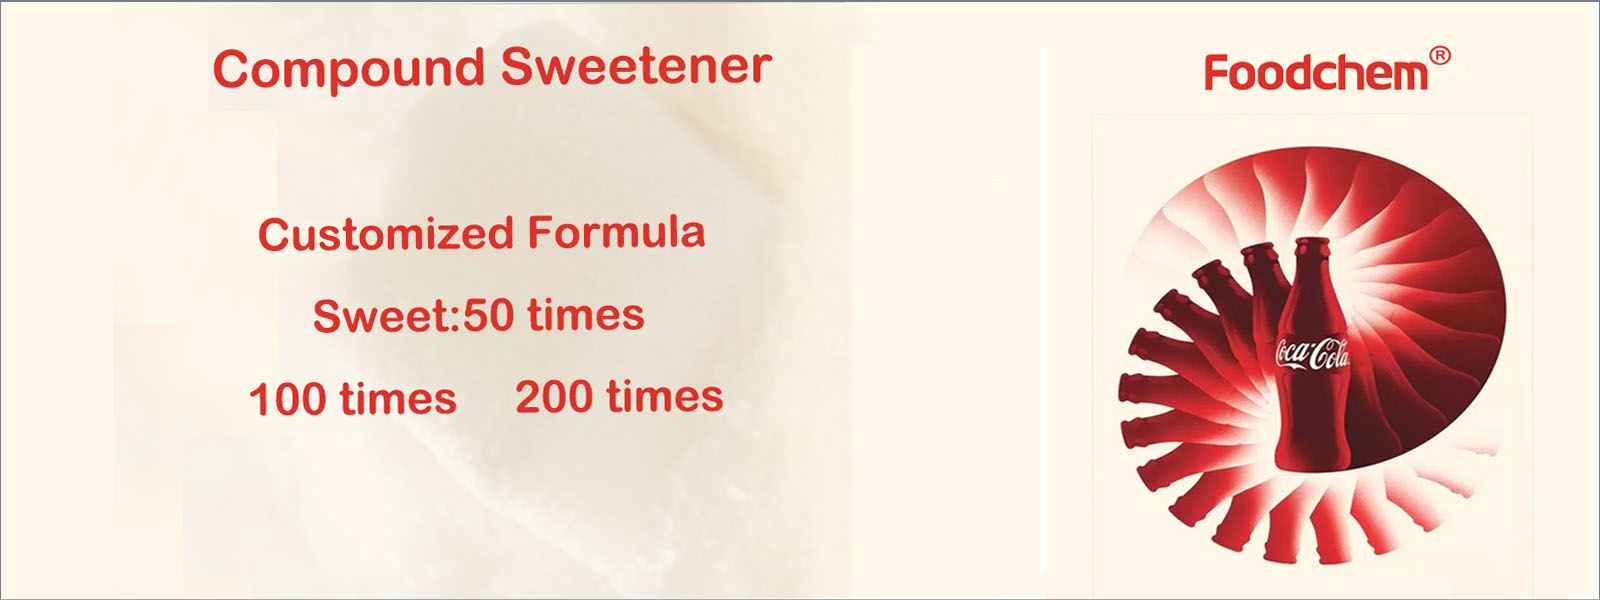 Compound Sweetener supplier